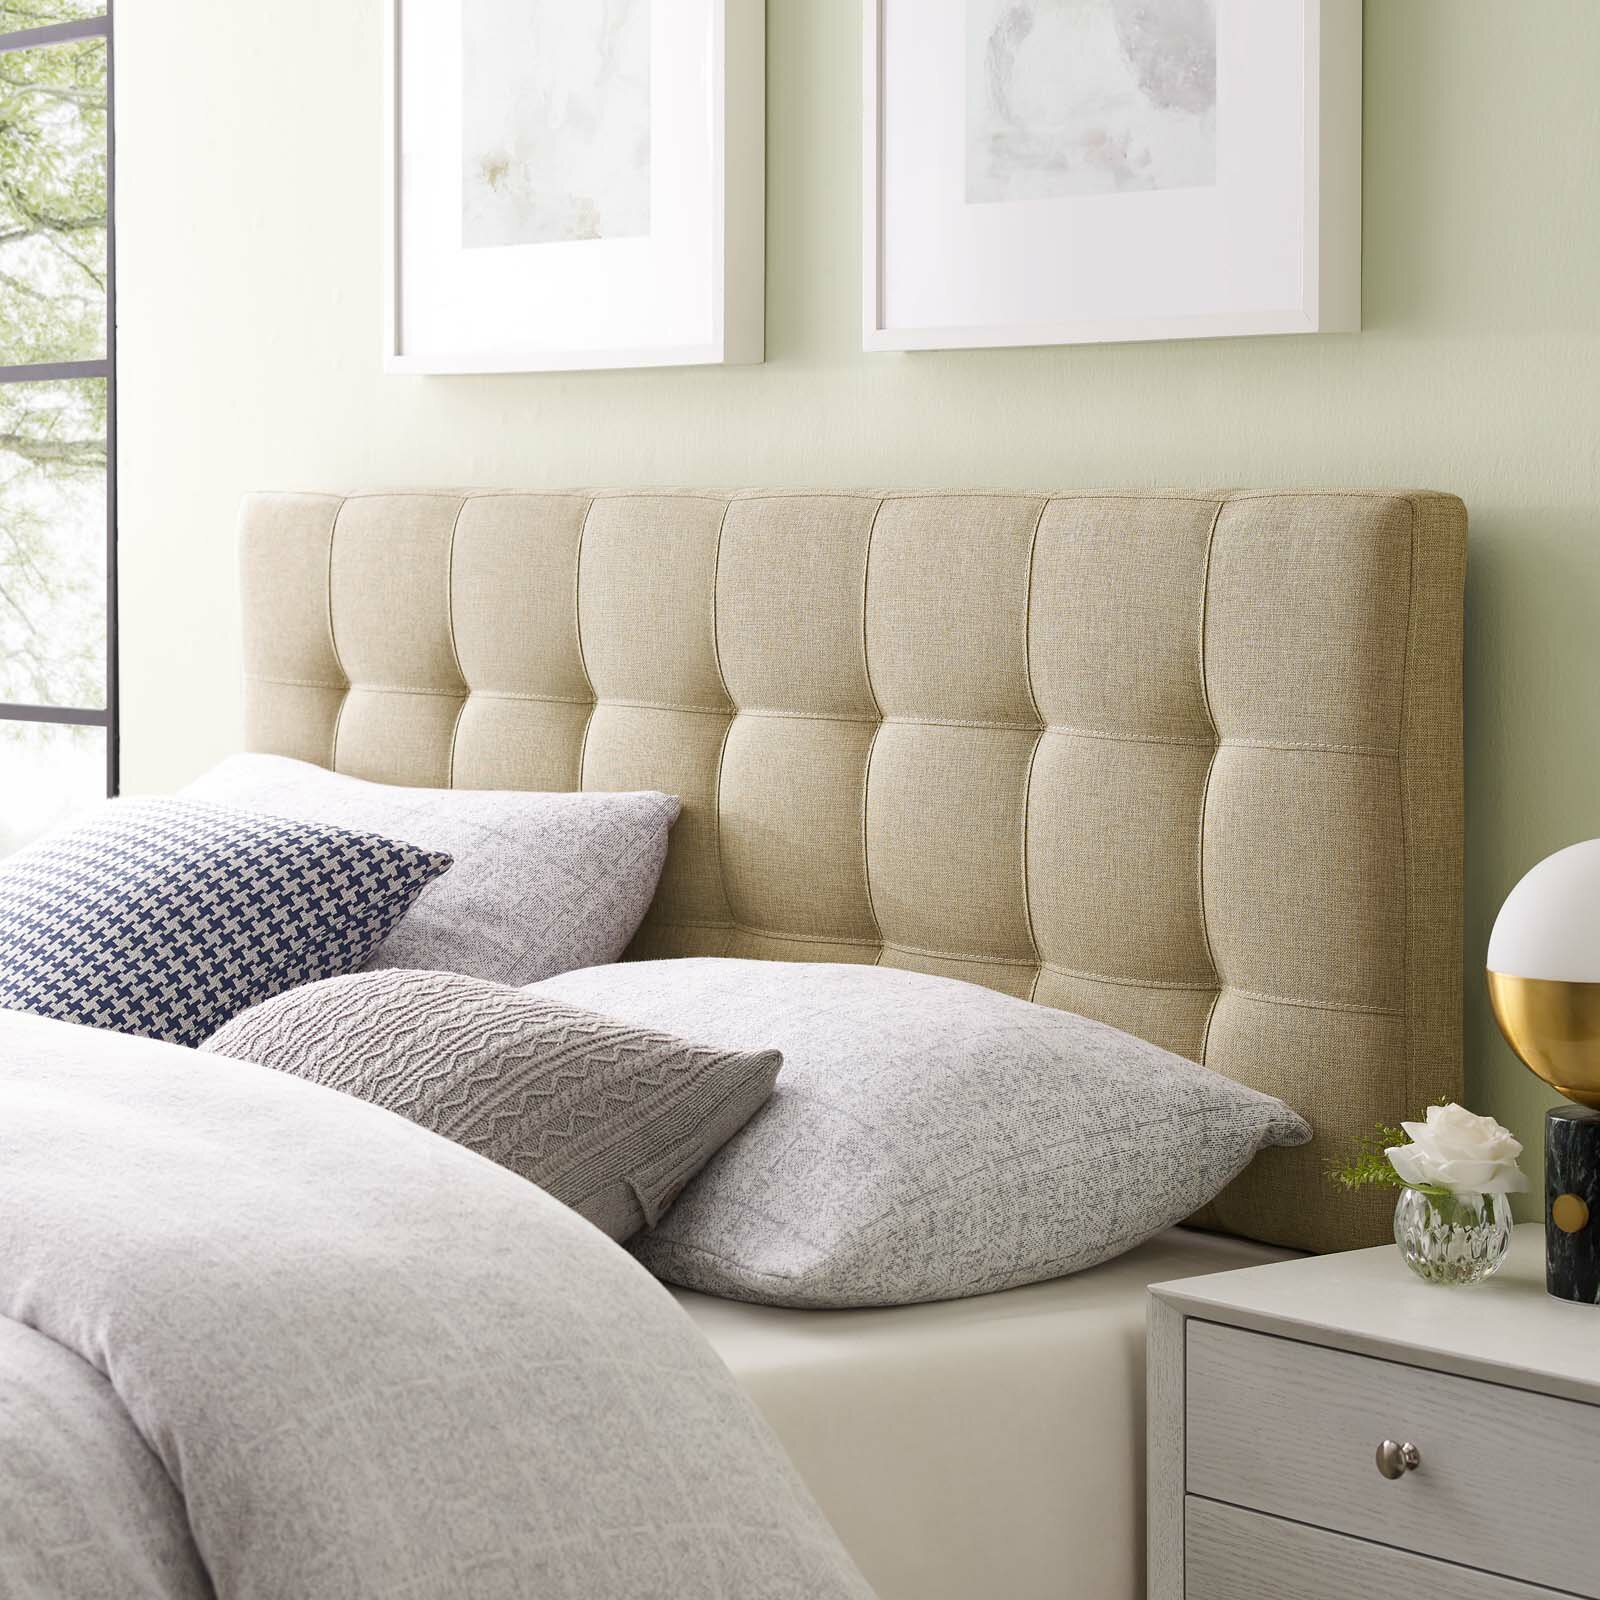 Sắc màu be là một trong những lựa chọn lý tưởng của tông màu trung tính để nuôi dưỡng bầu không khí tự nhiên trong phòng ngủ.